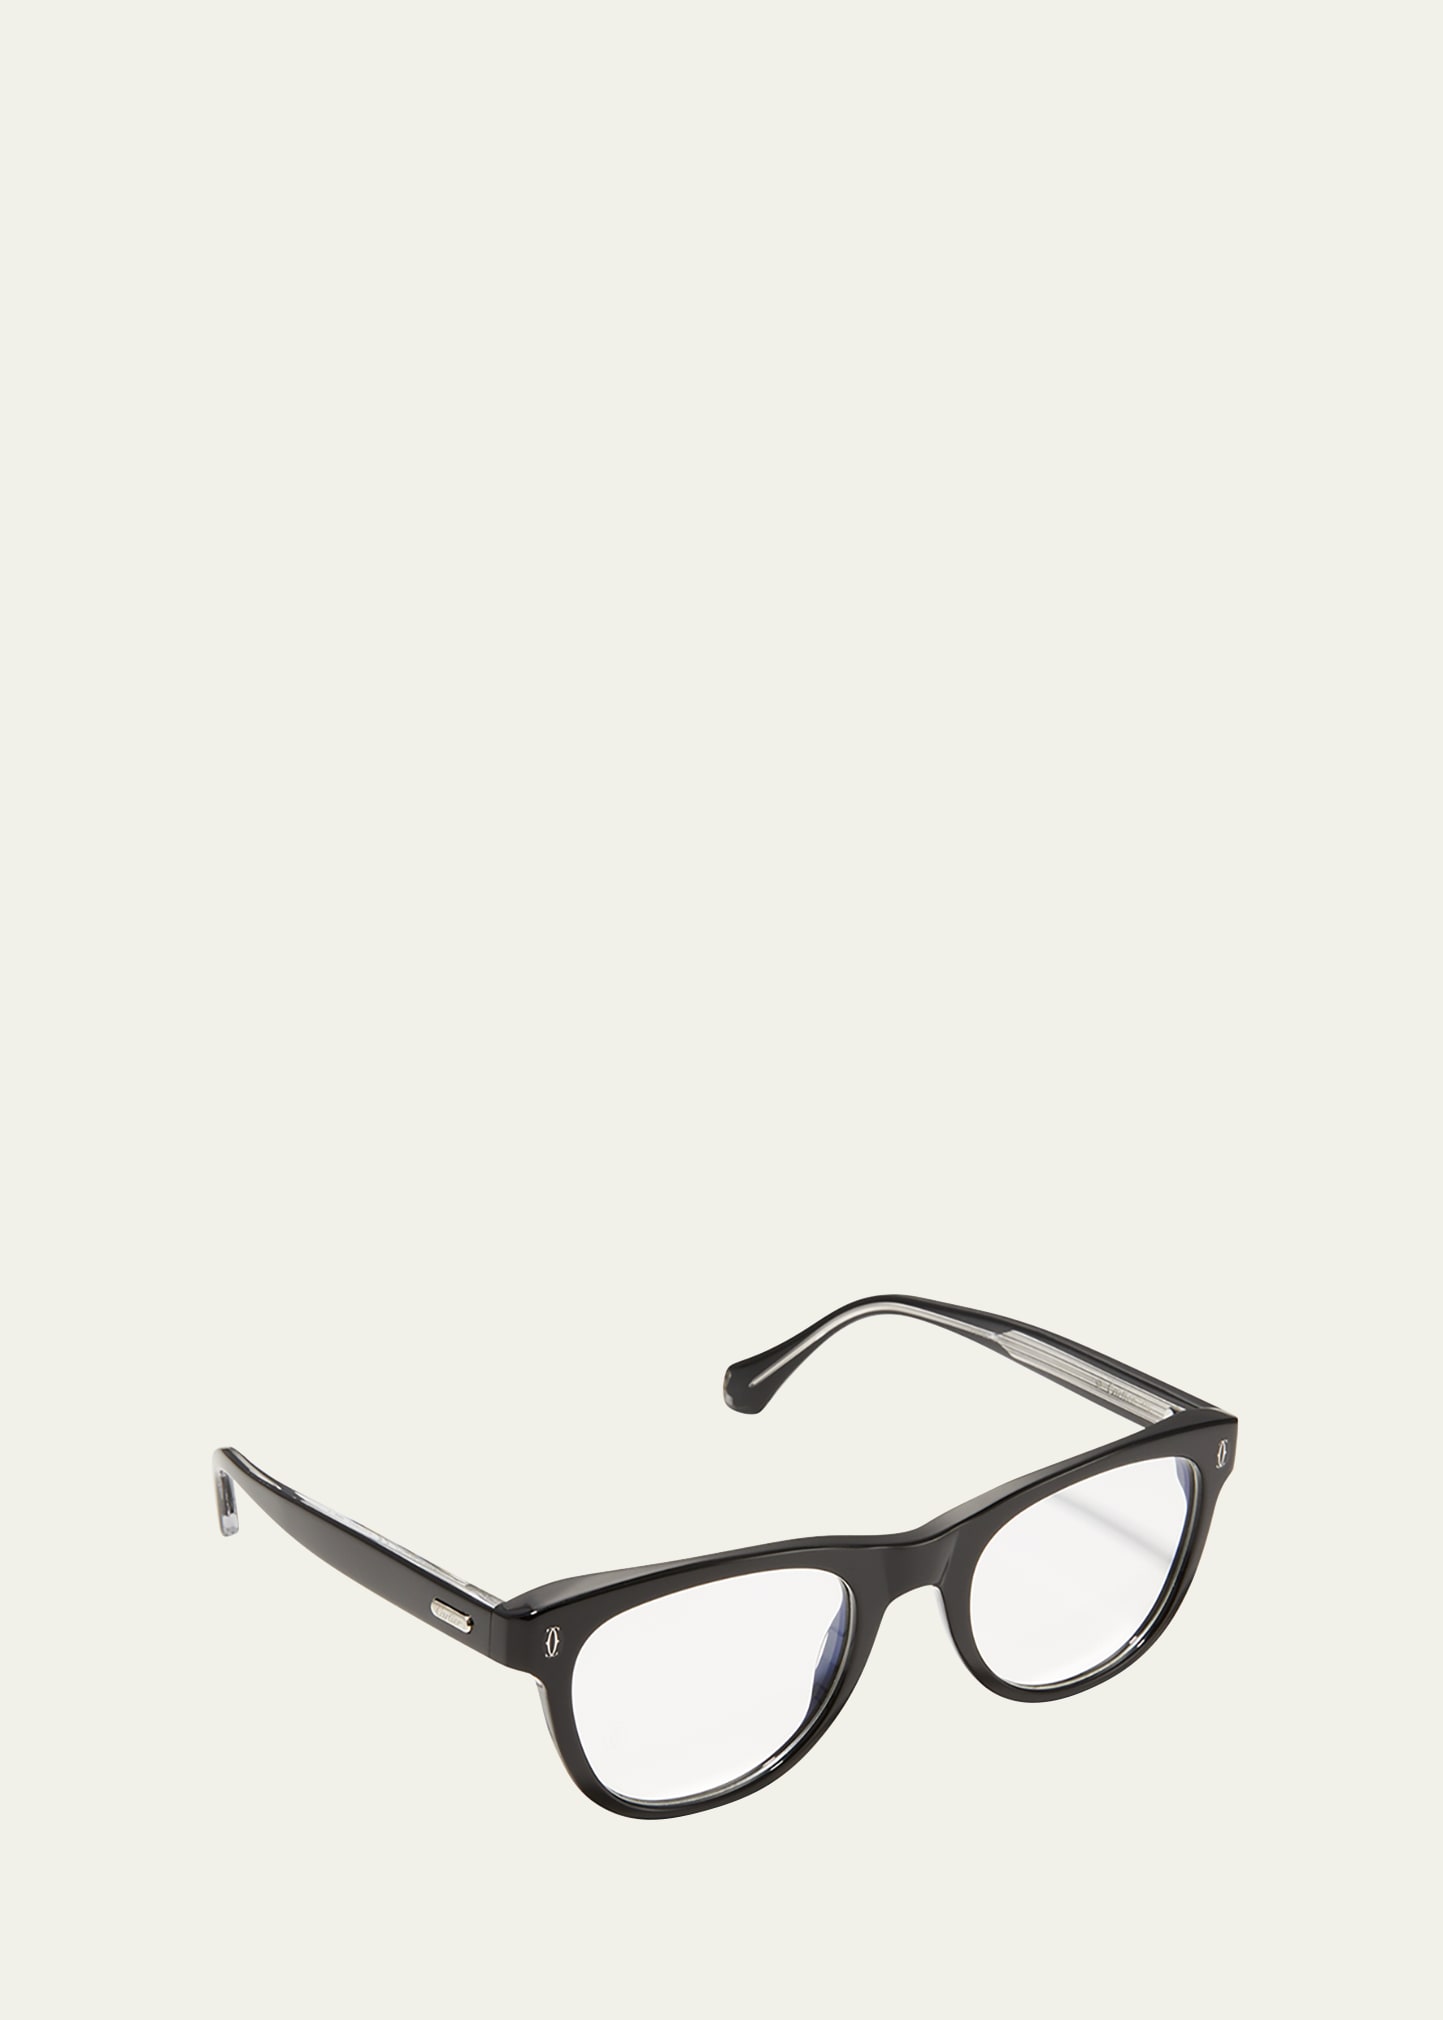 Cartier Men's Rectangle Full-rim Optical Glasses In 004 Black Colour